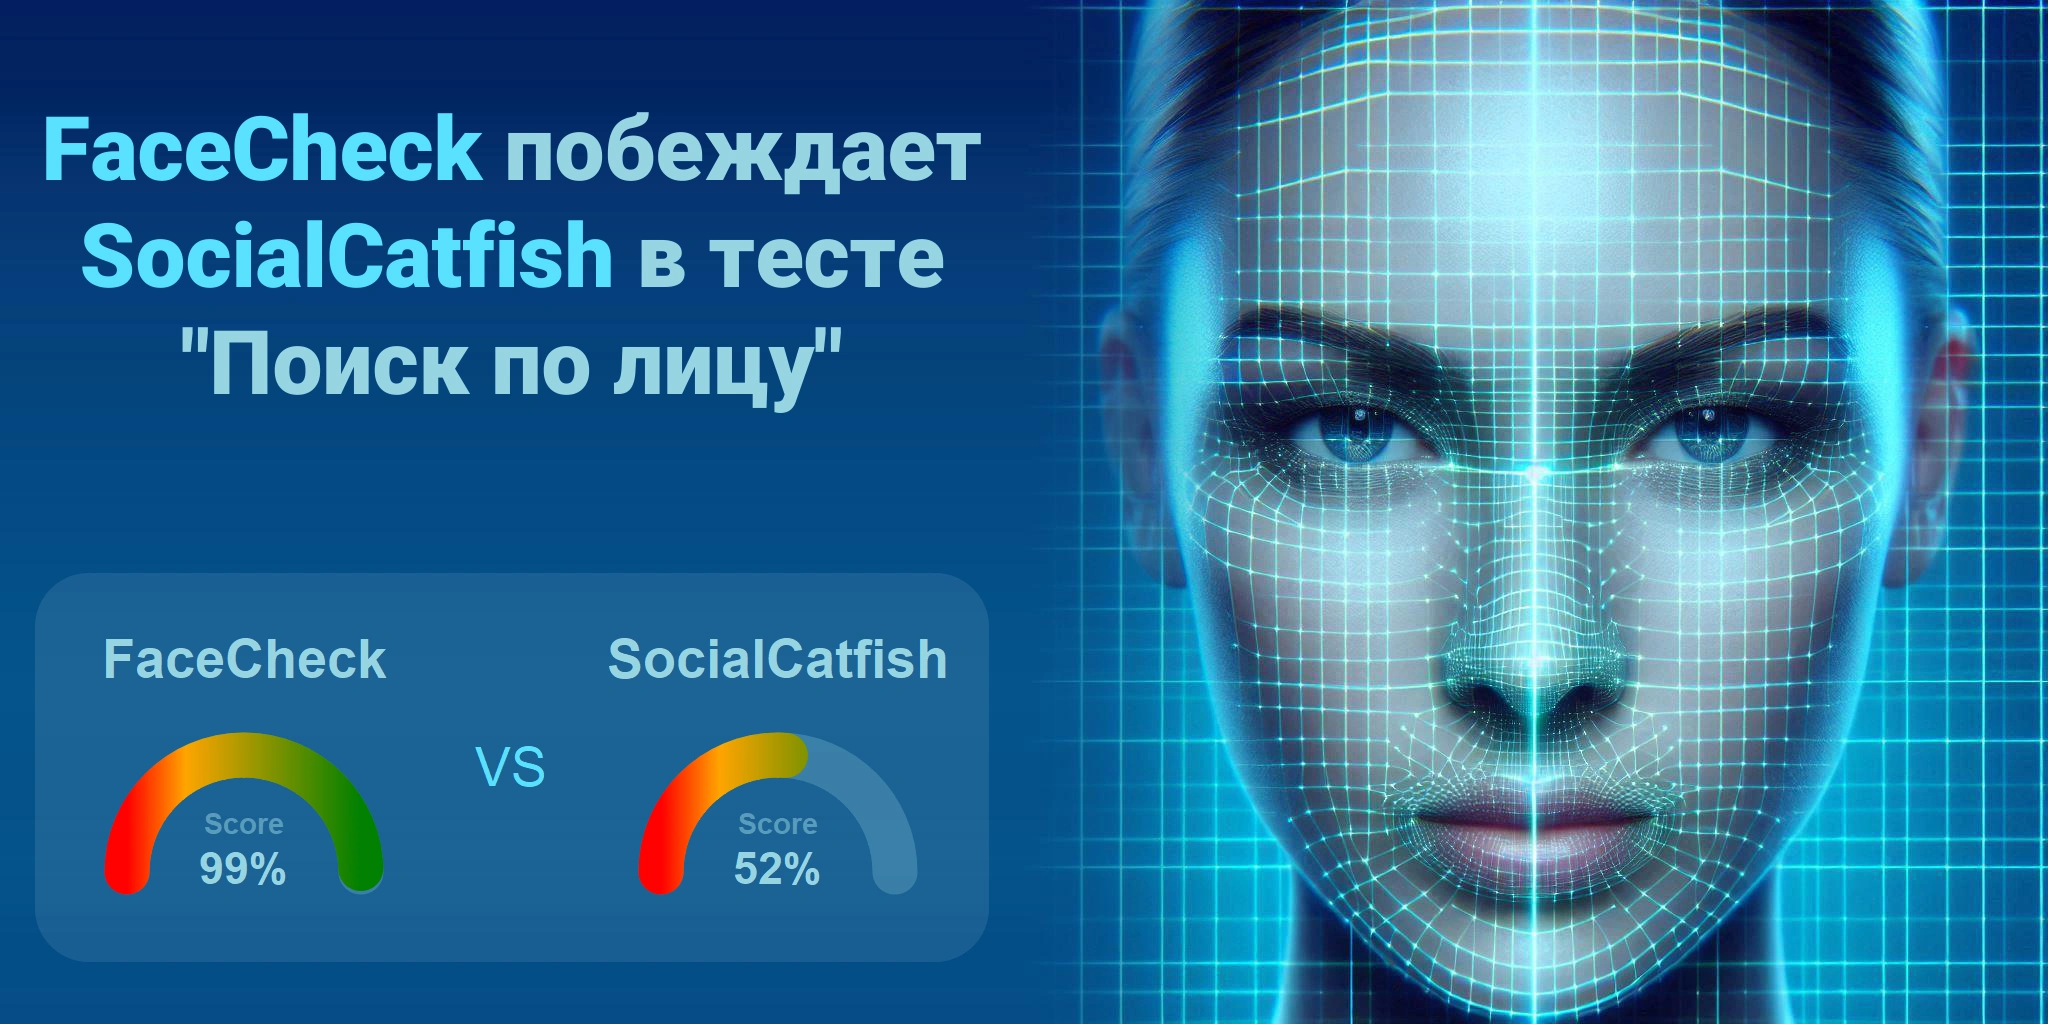 Что лучше для поиска по лицам: <br>FaceCheck или SocialCatfish?